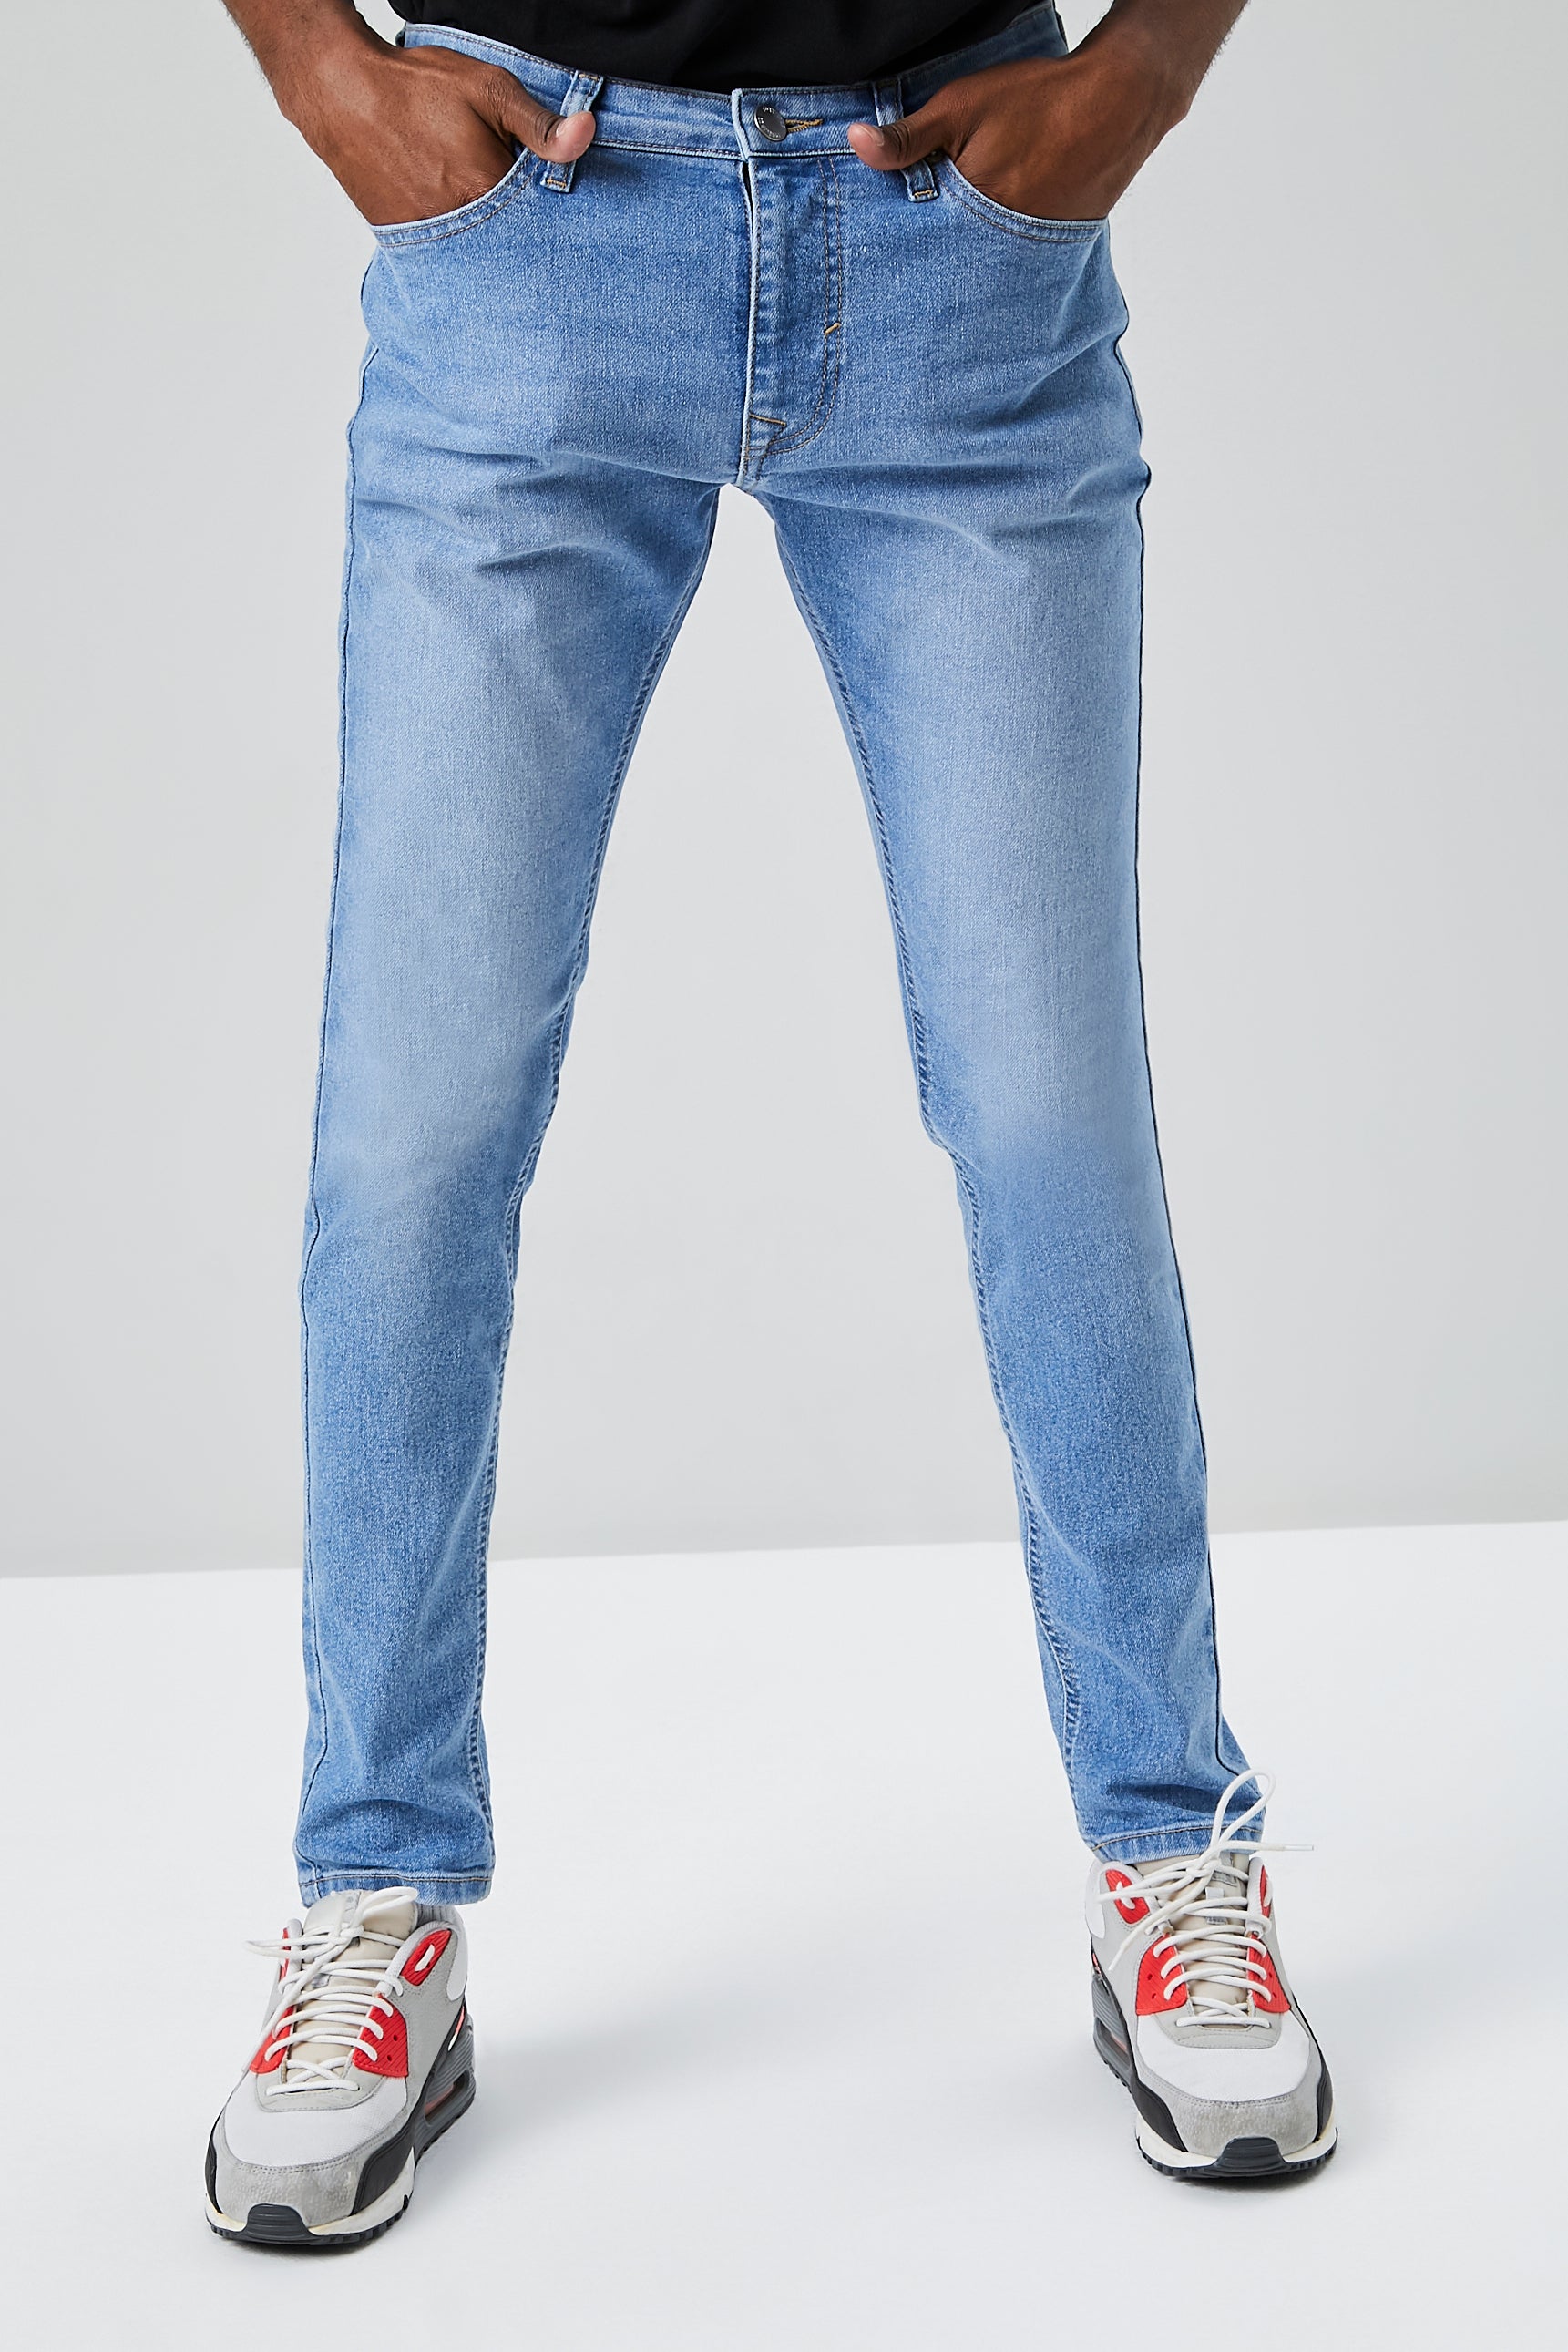 Mediumdenim Basic Skinny Jeans 2